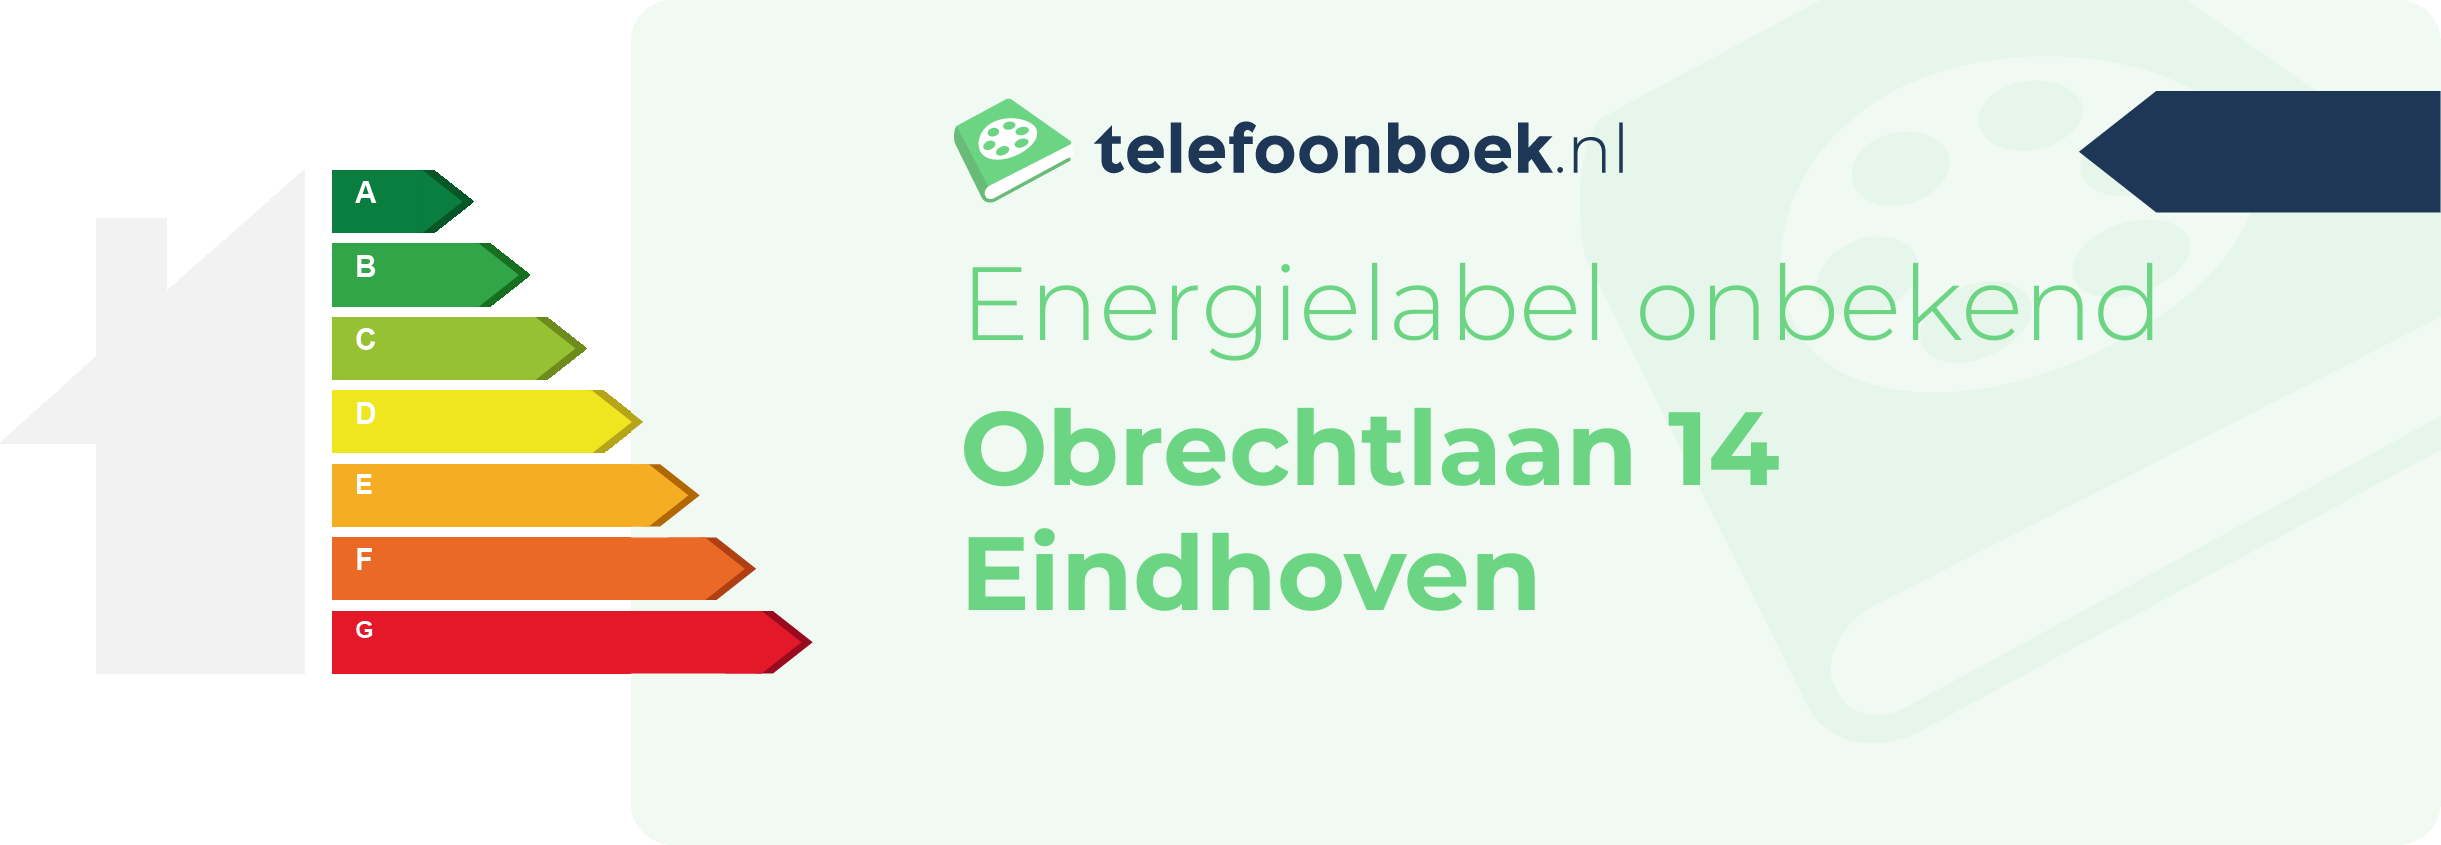 Energielabel Obrechtlaan 14 Eindhoven